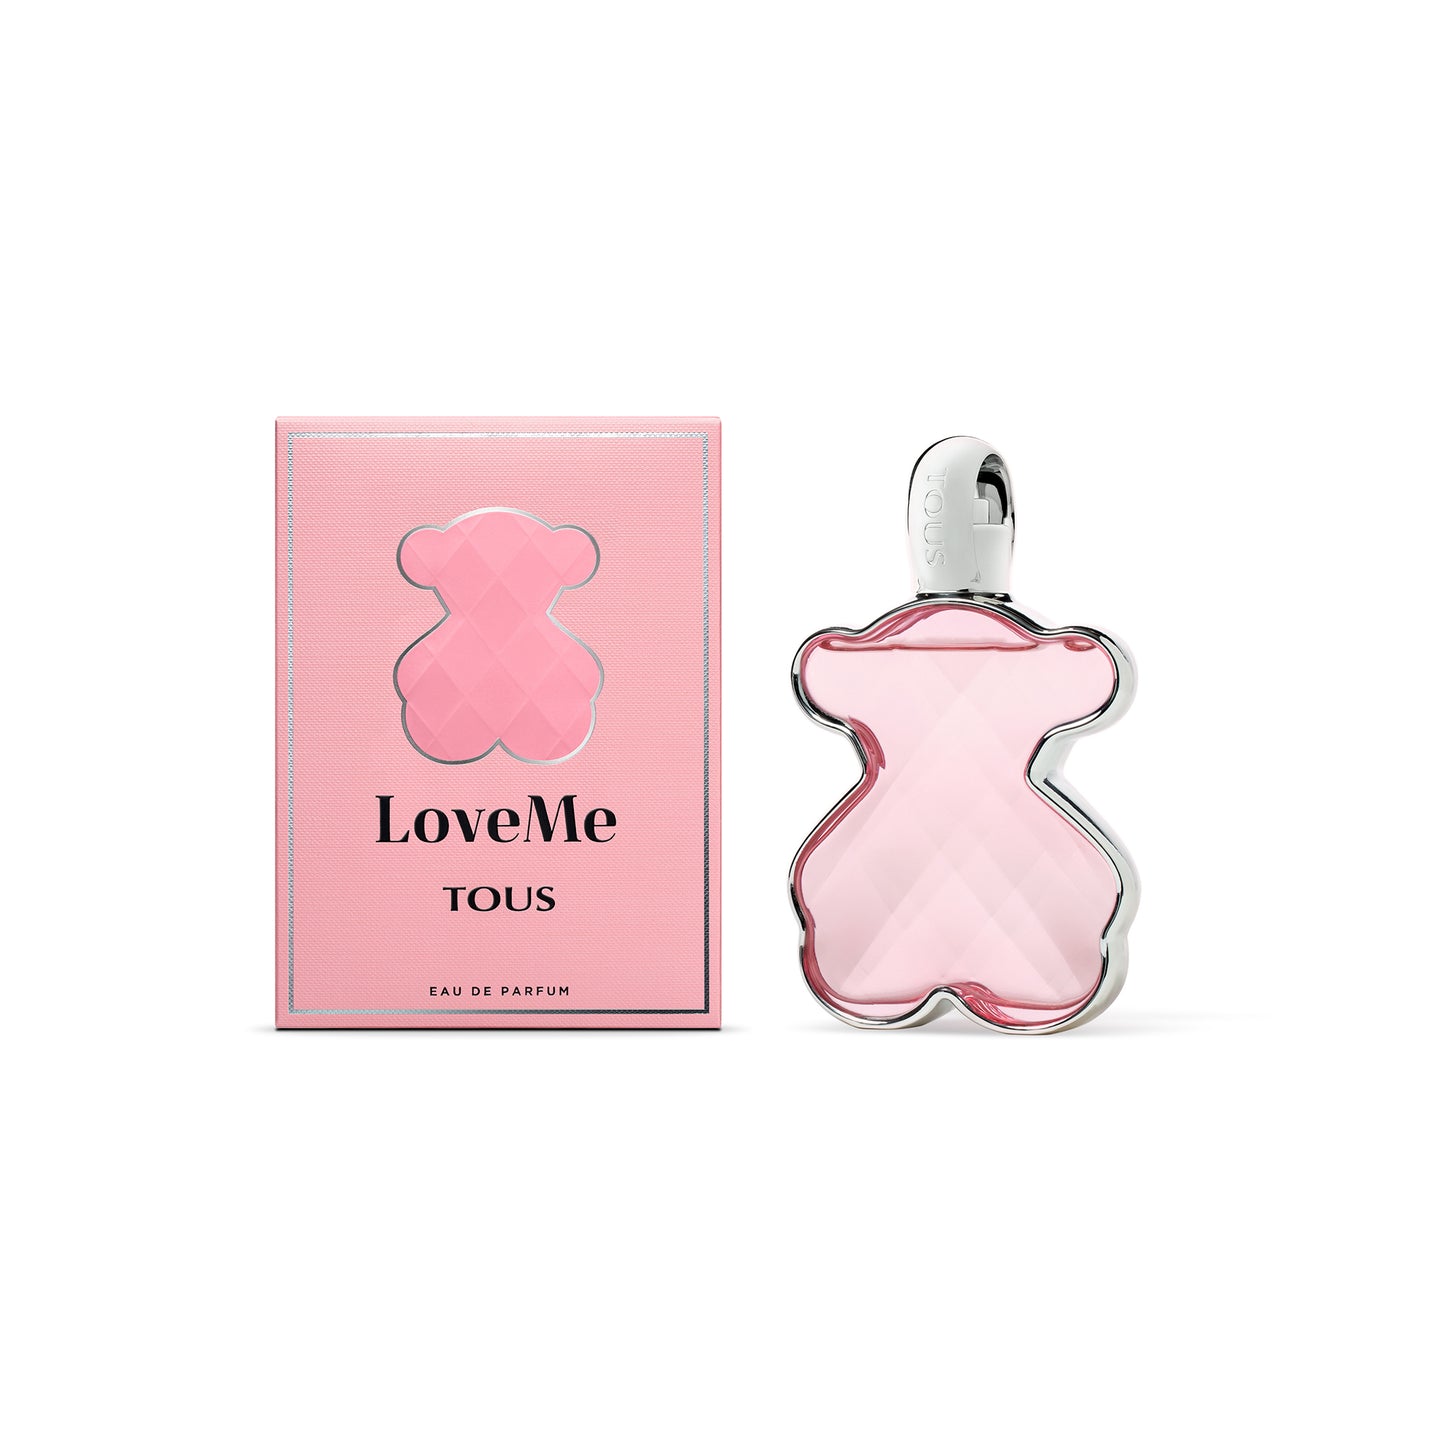 LoveMe 3.0 oz Eau de Parfum